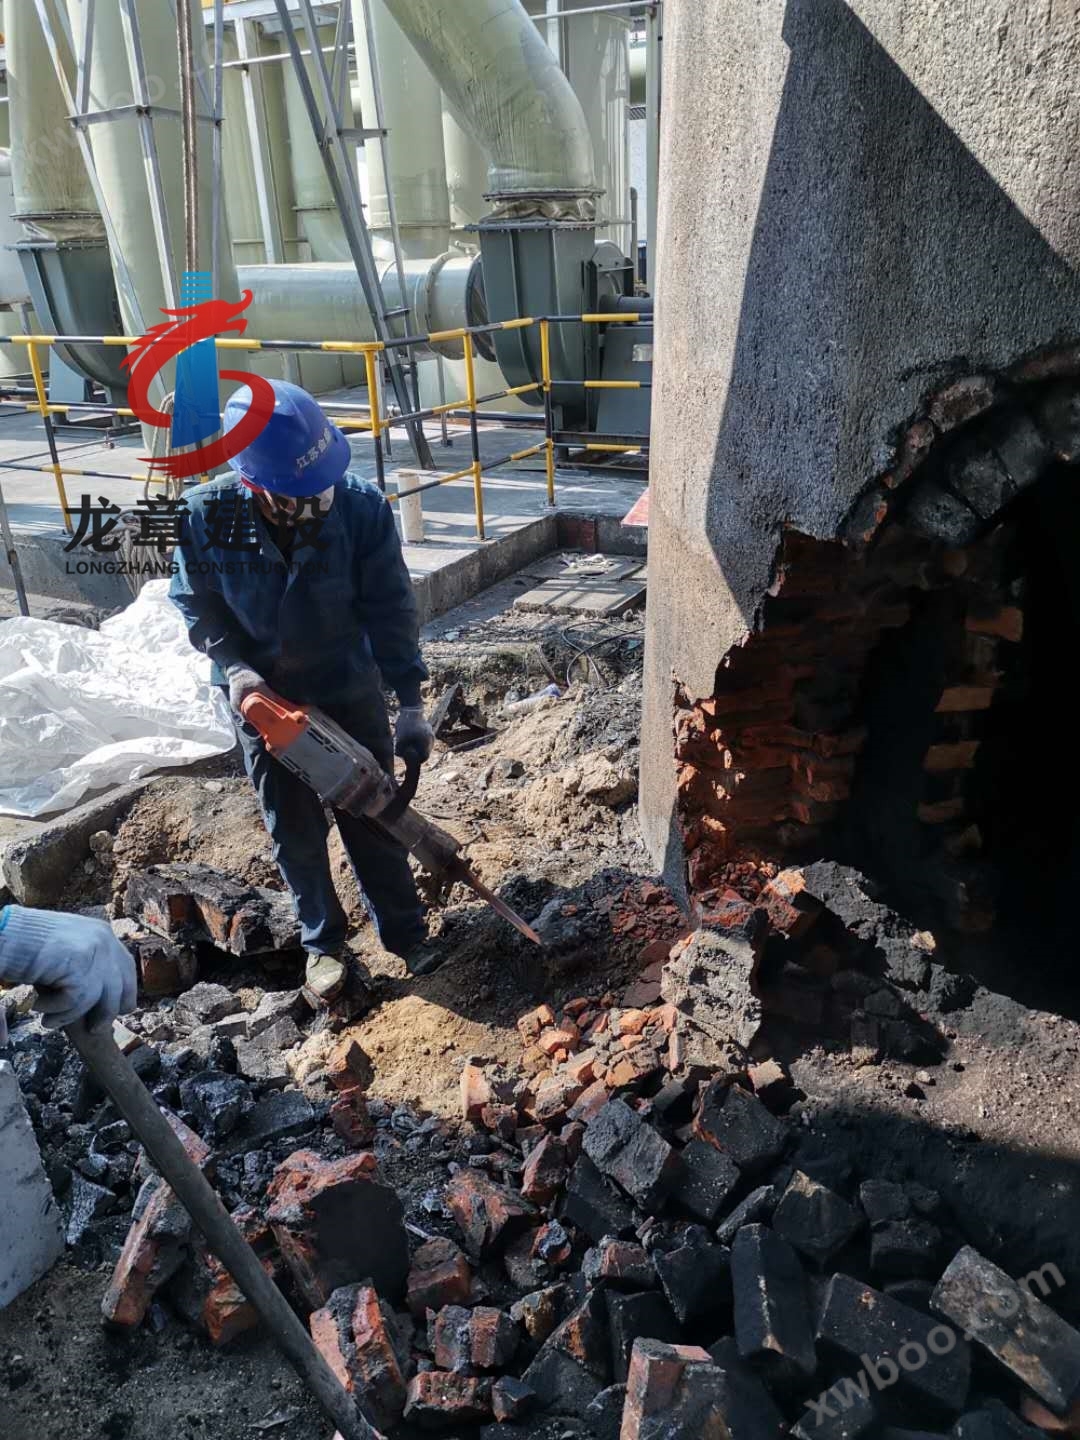 专业人工拆除砖烟囱施工     浙江宁波锅炉烟囱拆除公司